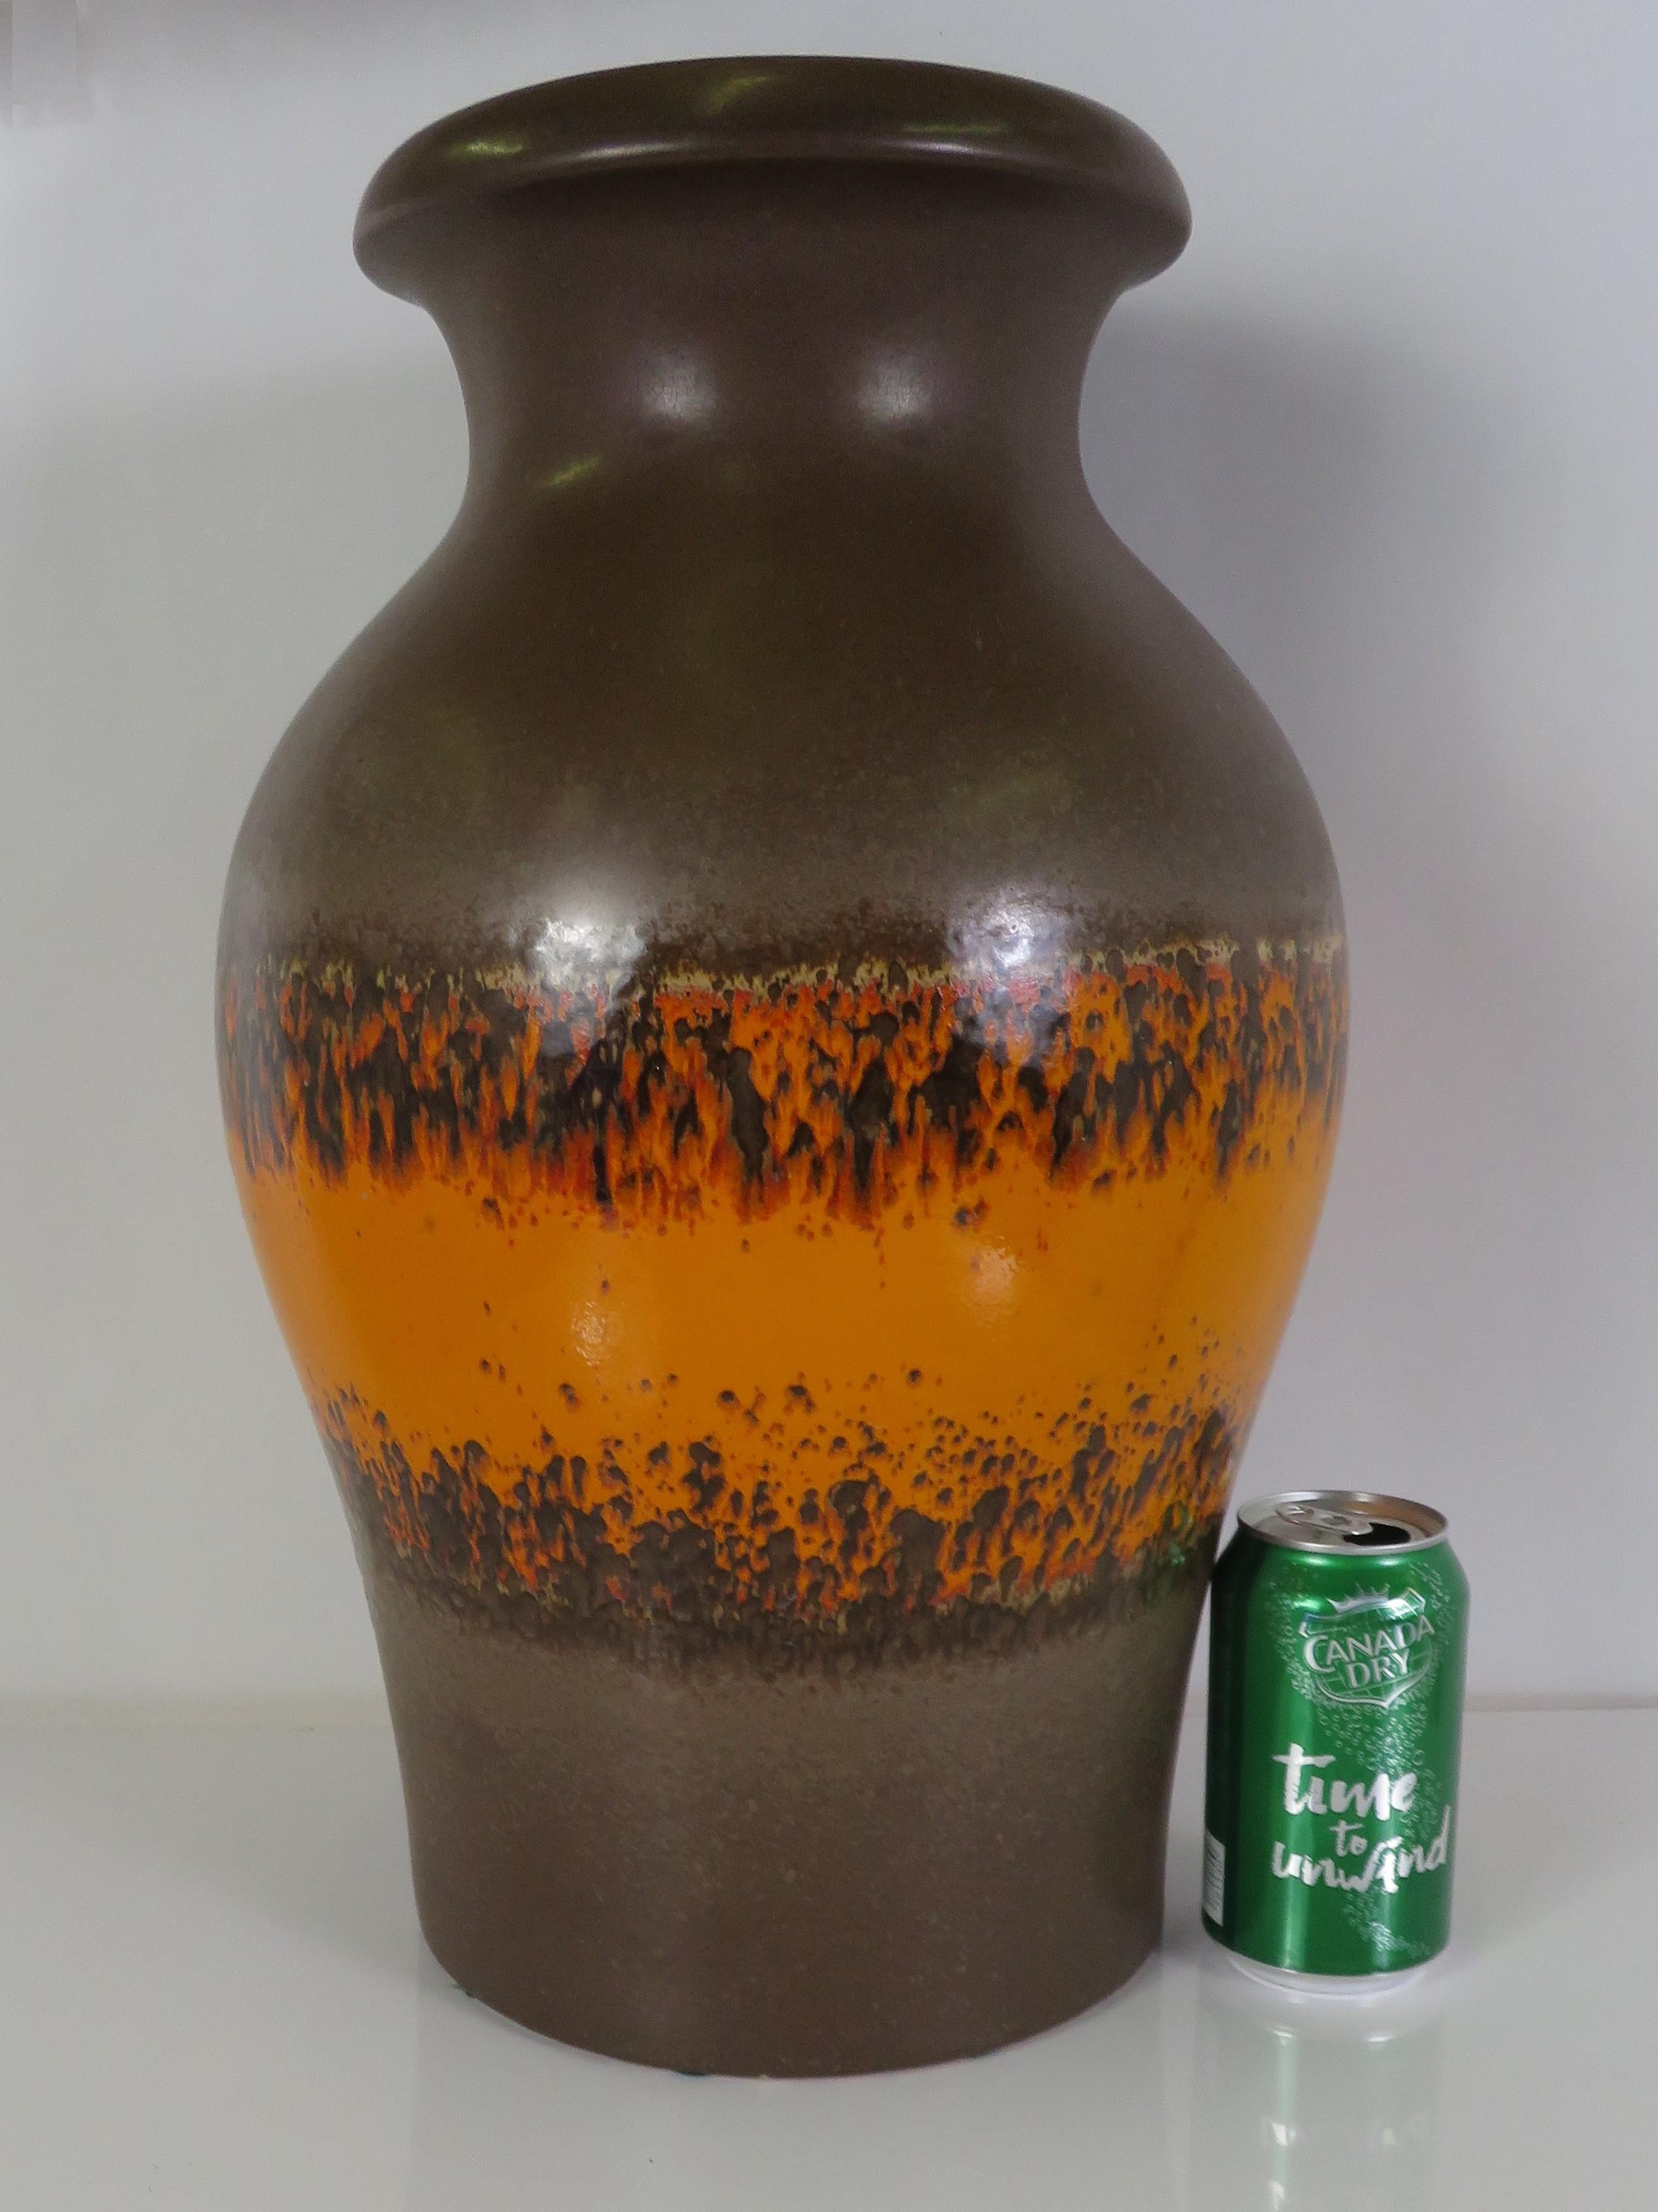 Grand et impressionnant vase de sol en poterie allemande à glaçure de lave des années 1960 de la poterie Scheurich. Forme grasse et séduisante, à la fois masculine et forte. Conçu avec une bande de lave orange au centre sur un fond de cholate foncé,